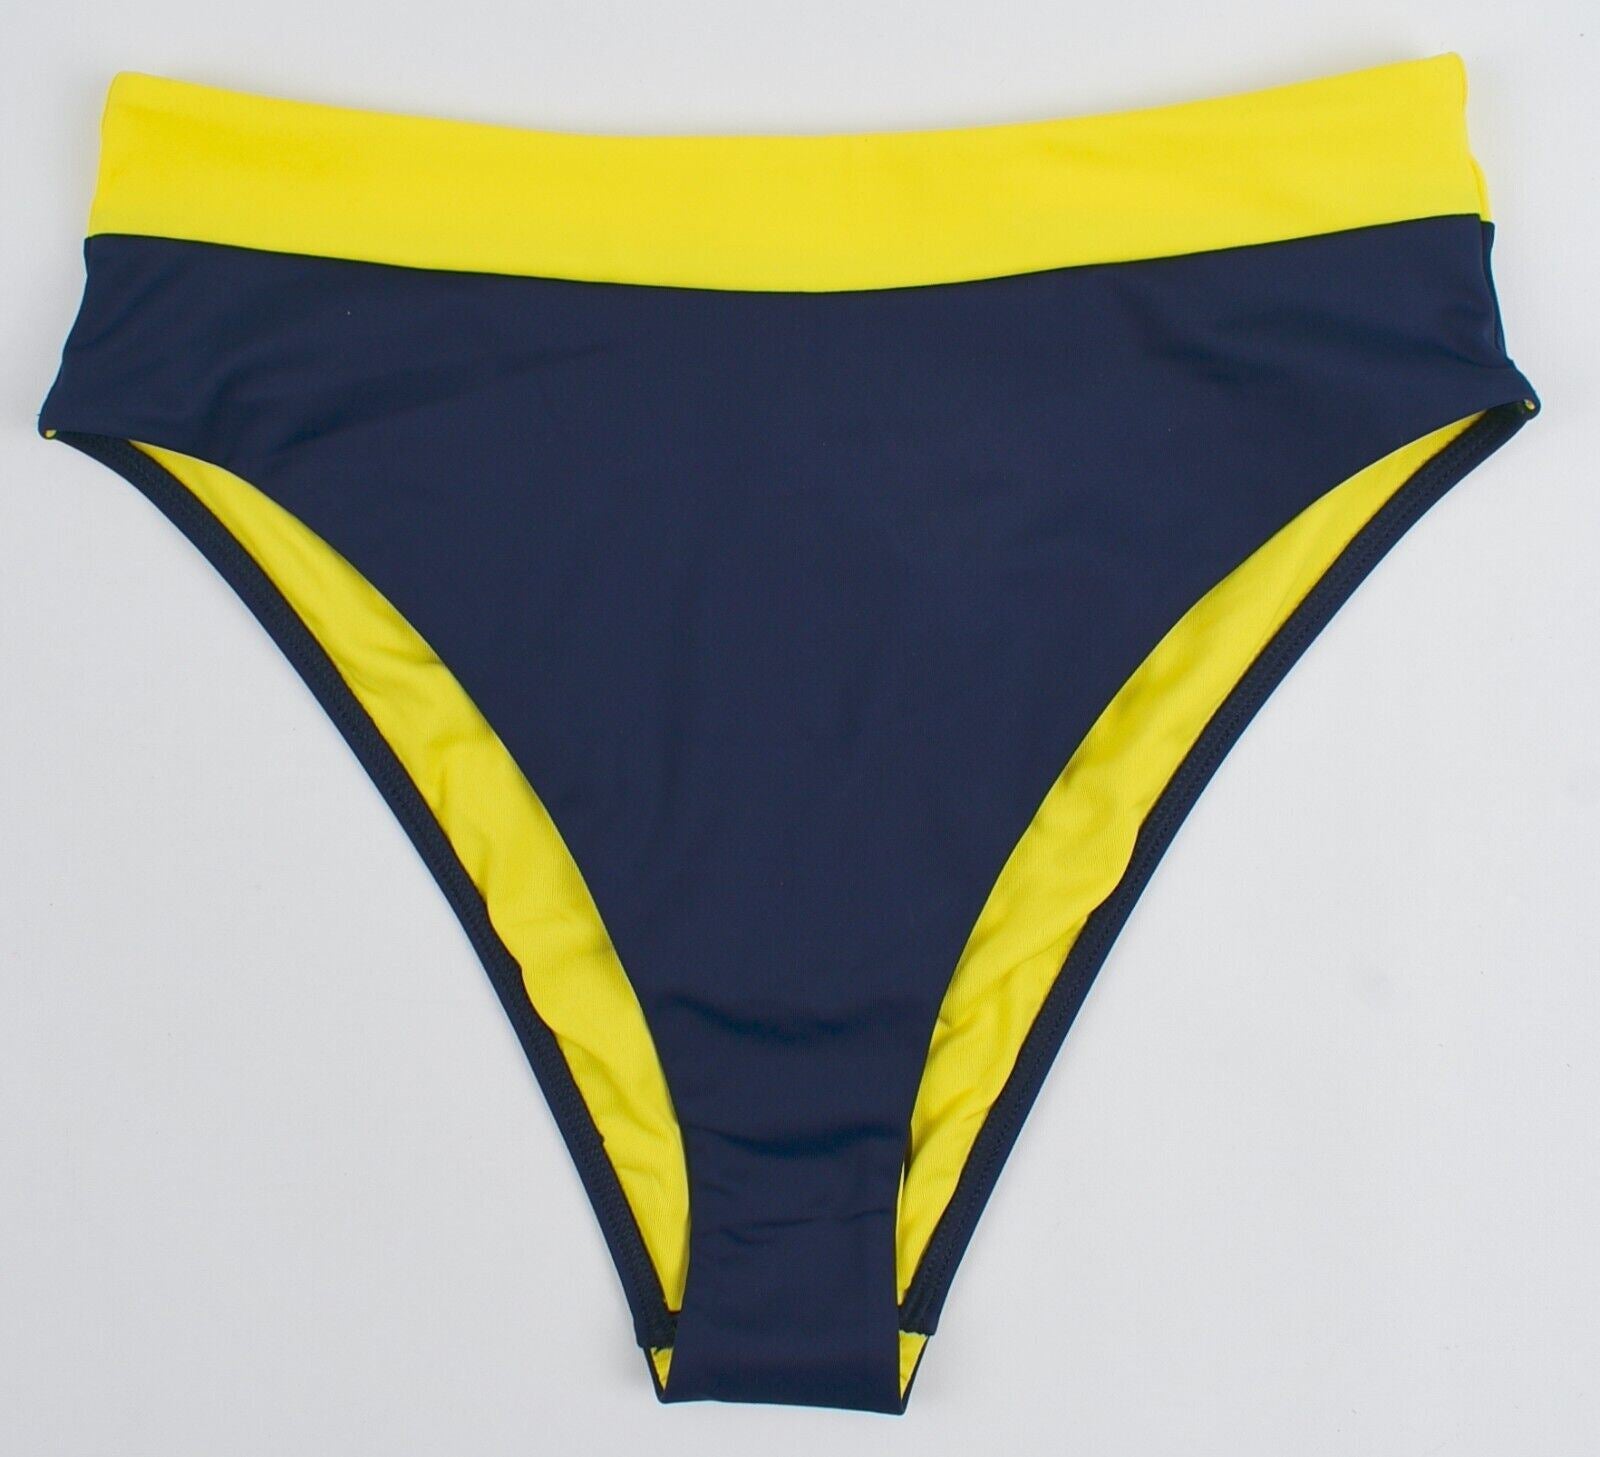 TOMMY HILFIGER Swimwear: Women's Cheeky Bikini Bottoms, Blue/Bold Yellow, size S